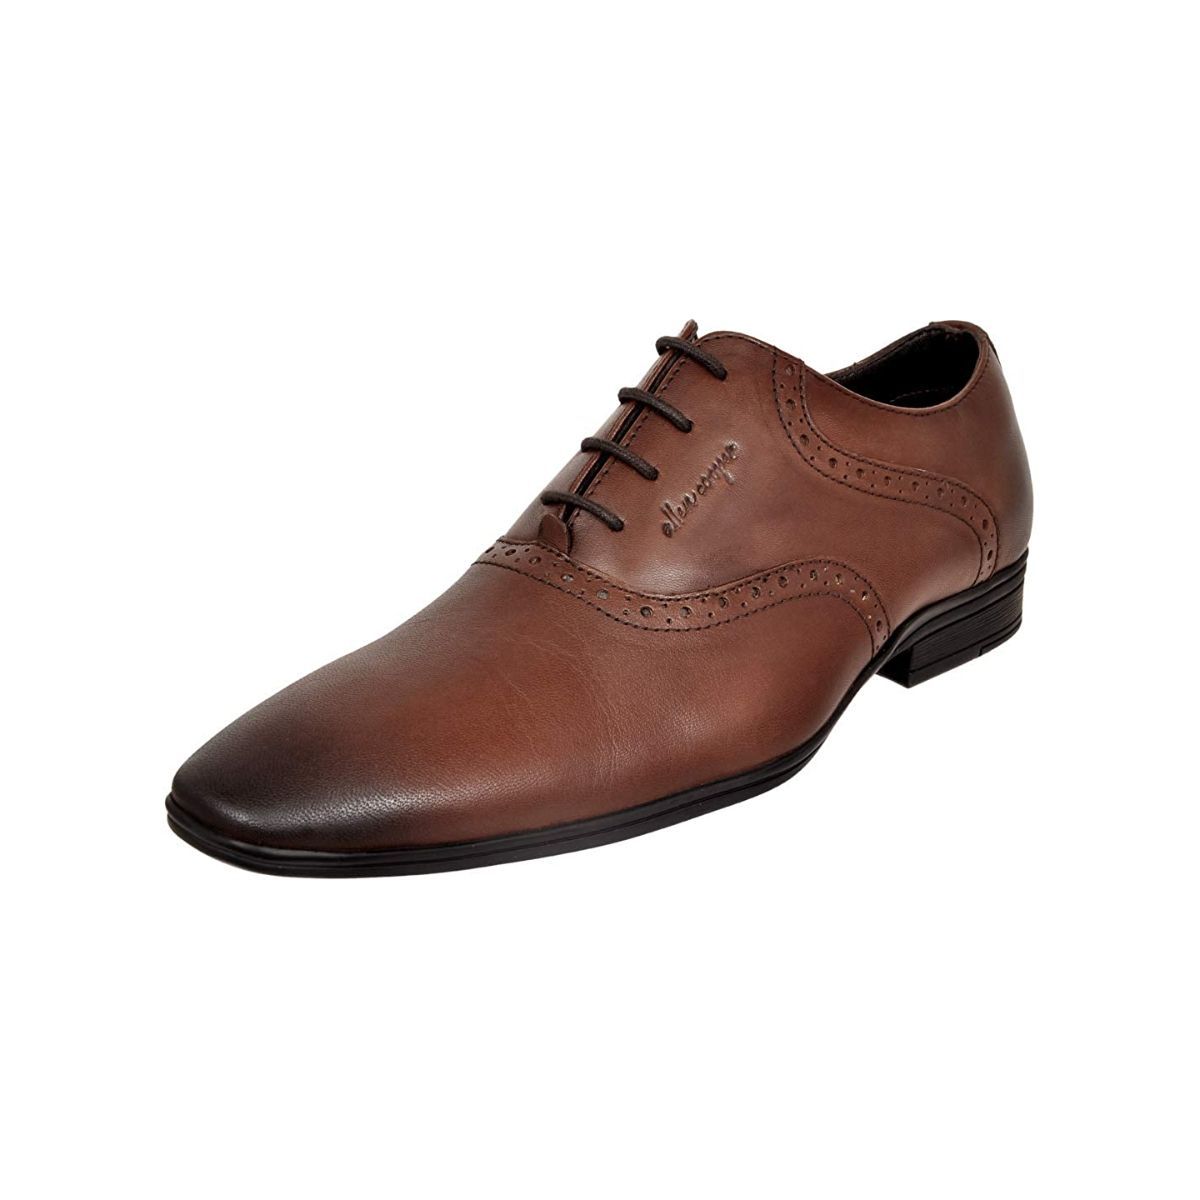 Allen Cooper Brown Formal Shoes For Men - 7